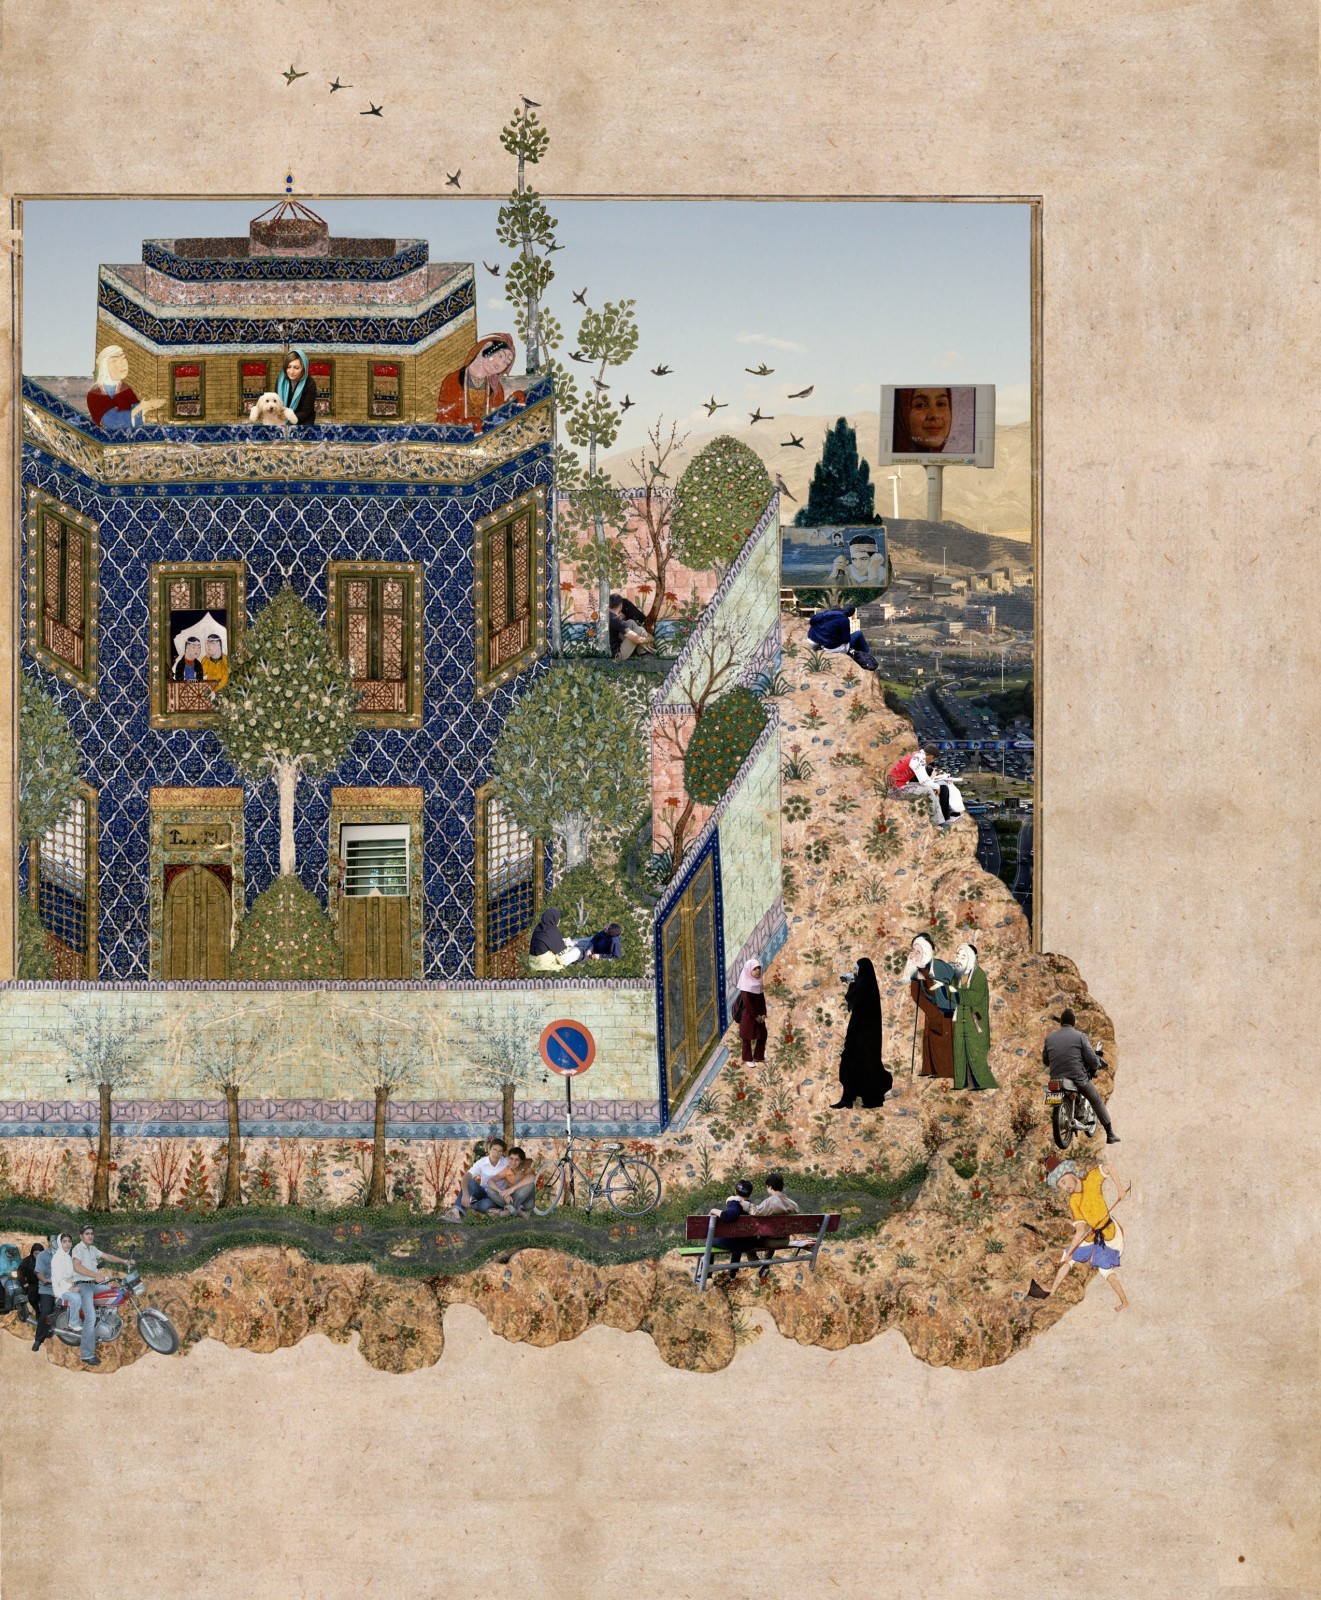 Barbad caché dans un cyprès joue pour le roi - Iran, Tabriz, vers 1535 Nasser D. Khalili Collection of Islamic Art © Nour Foundation Courtesy of the Khalili Family Trust